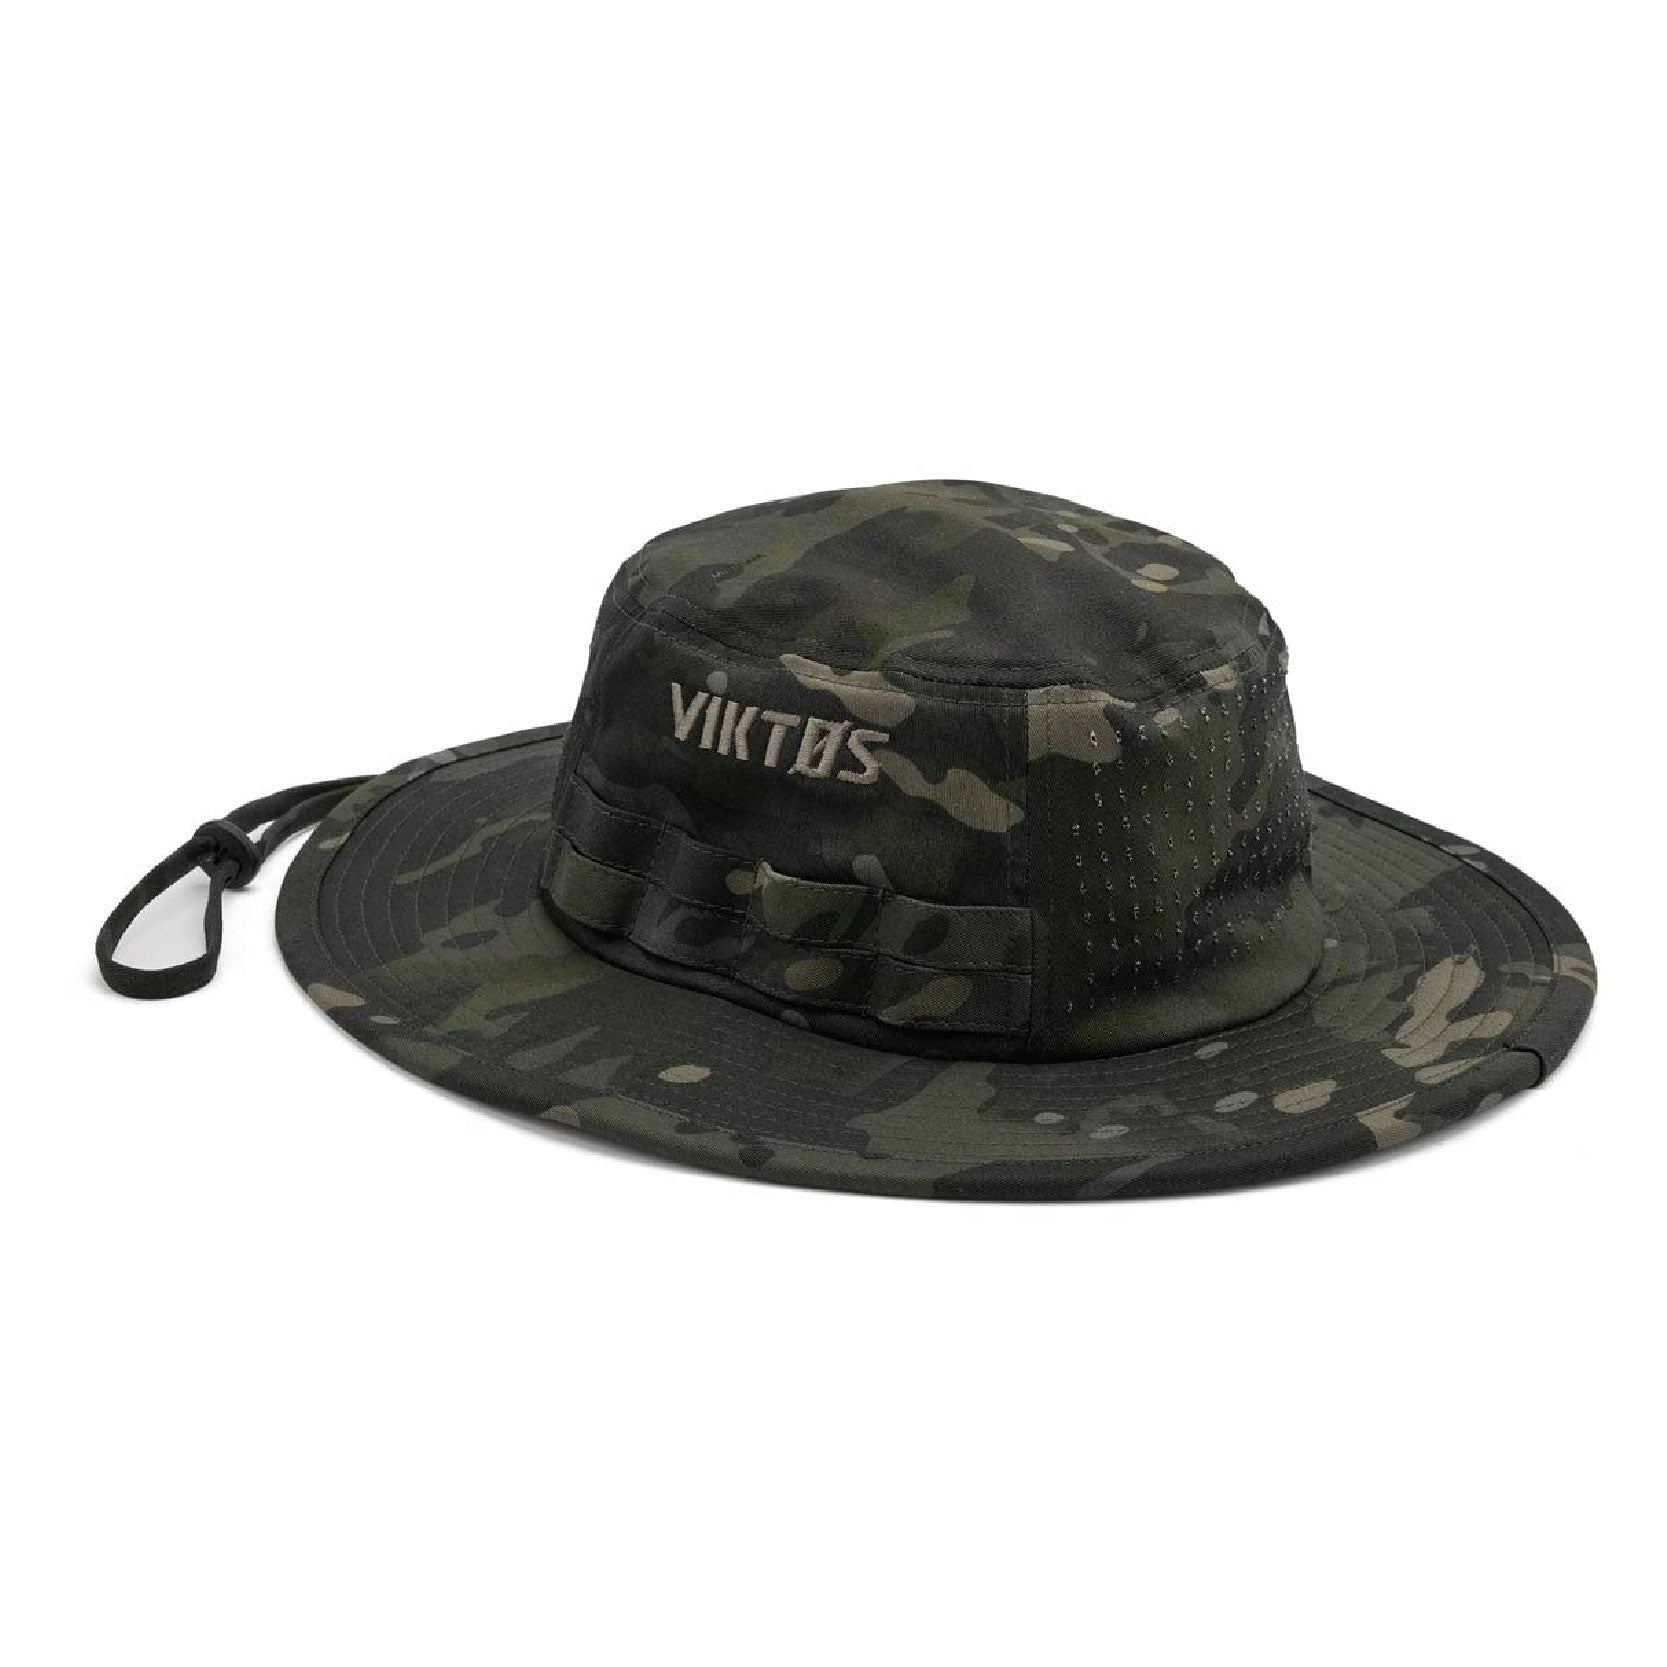 VIKTOS Upriver Boonie Hat